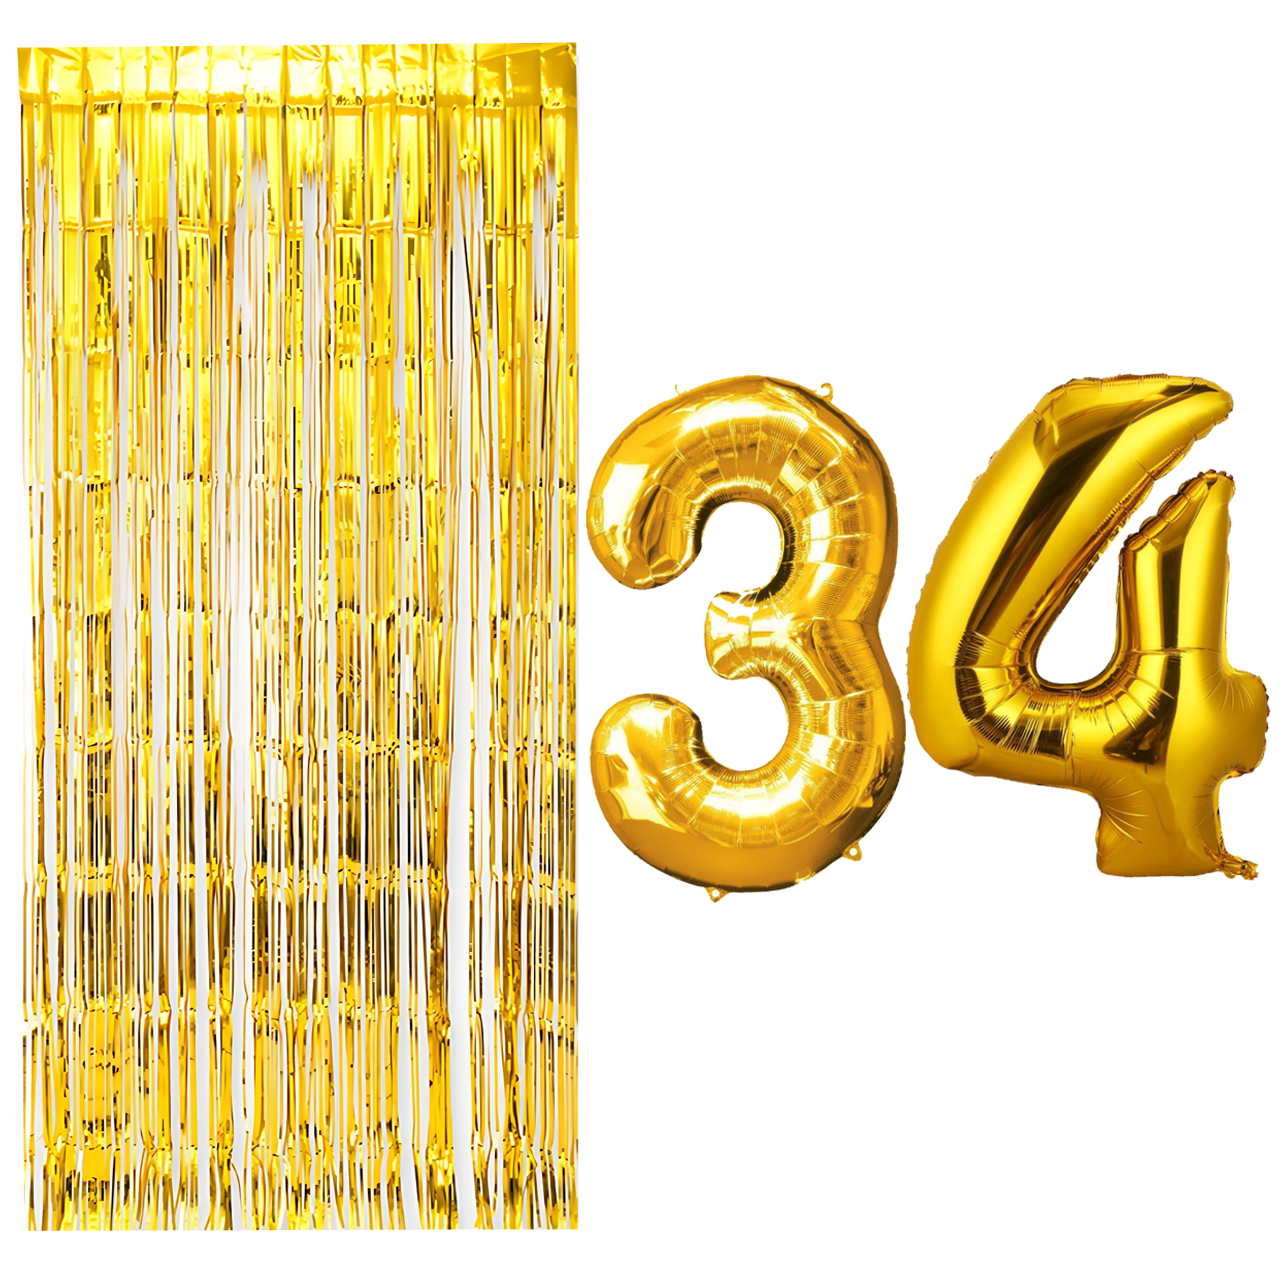 بادکنک فویلی مسترتم طرح عدد 34 به همراه پرده تزئینی بسته 3 عددی